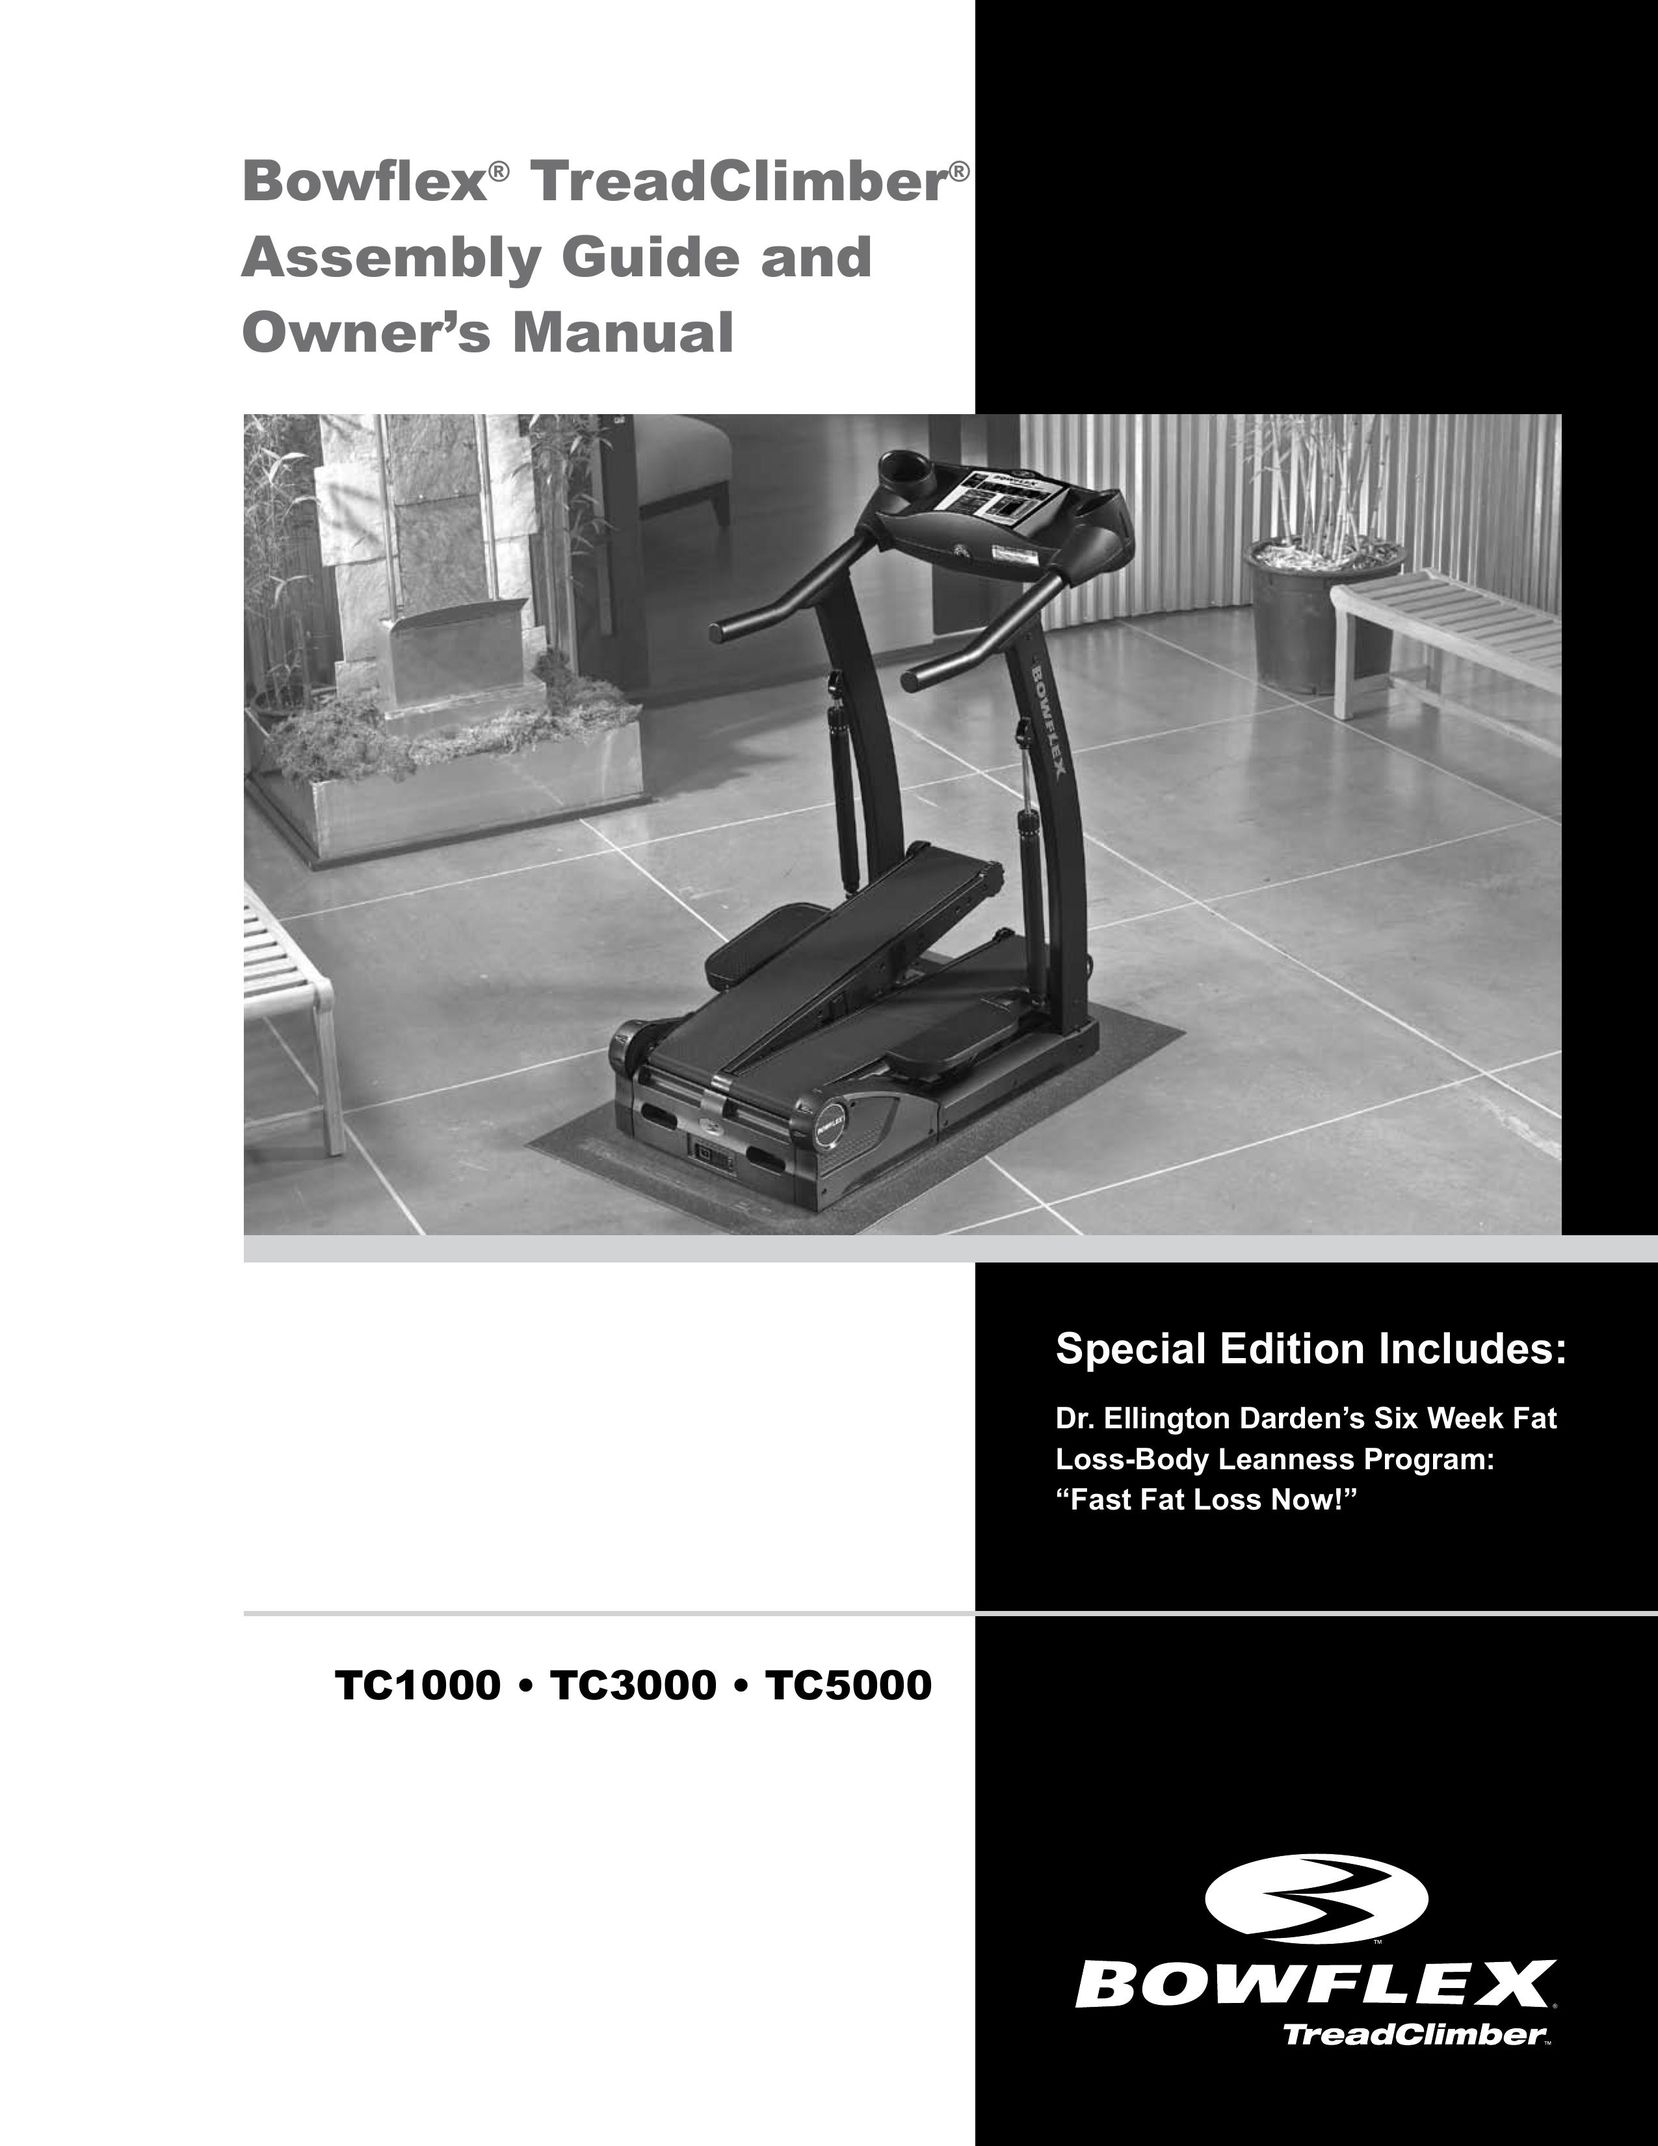 Bowflex TC1000 Home Gym User Manual